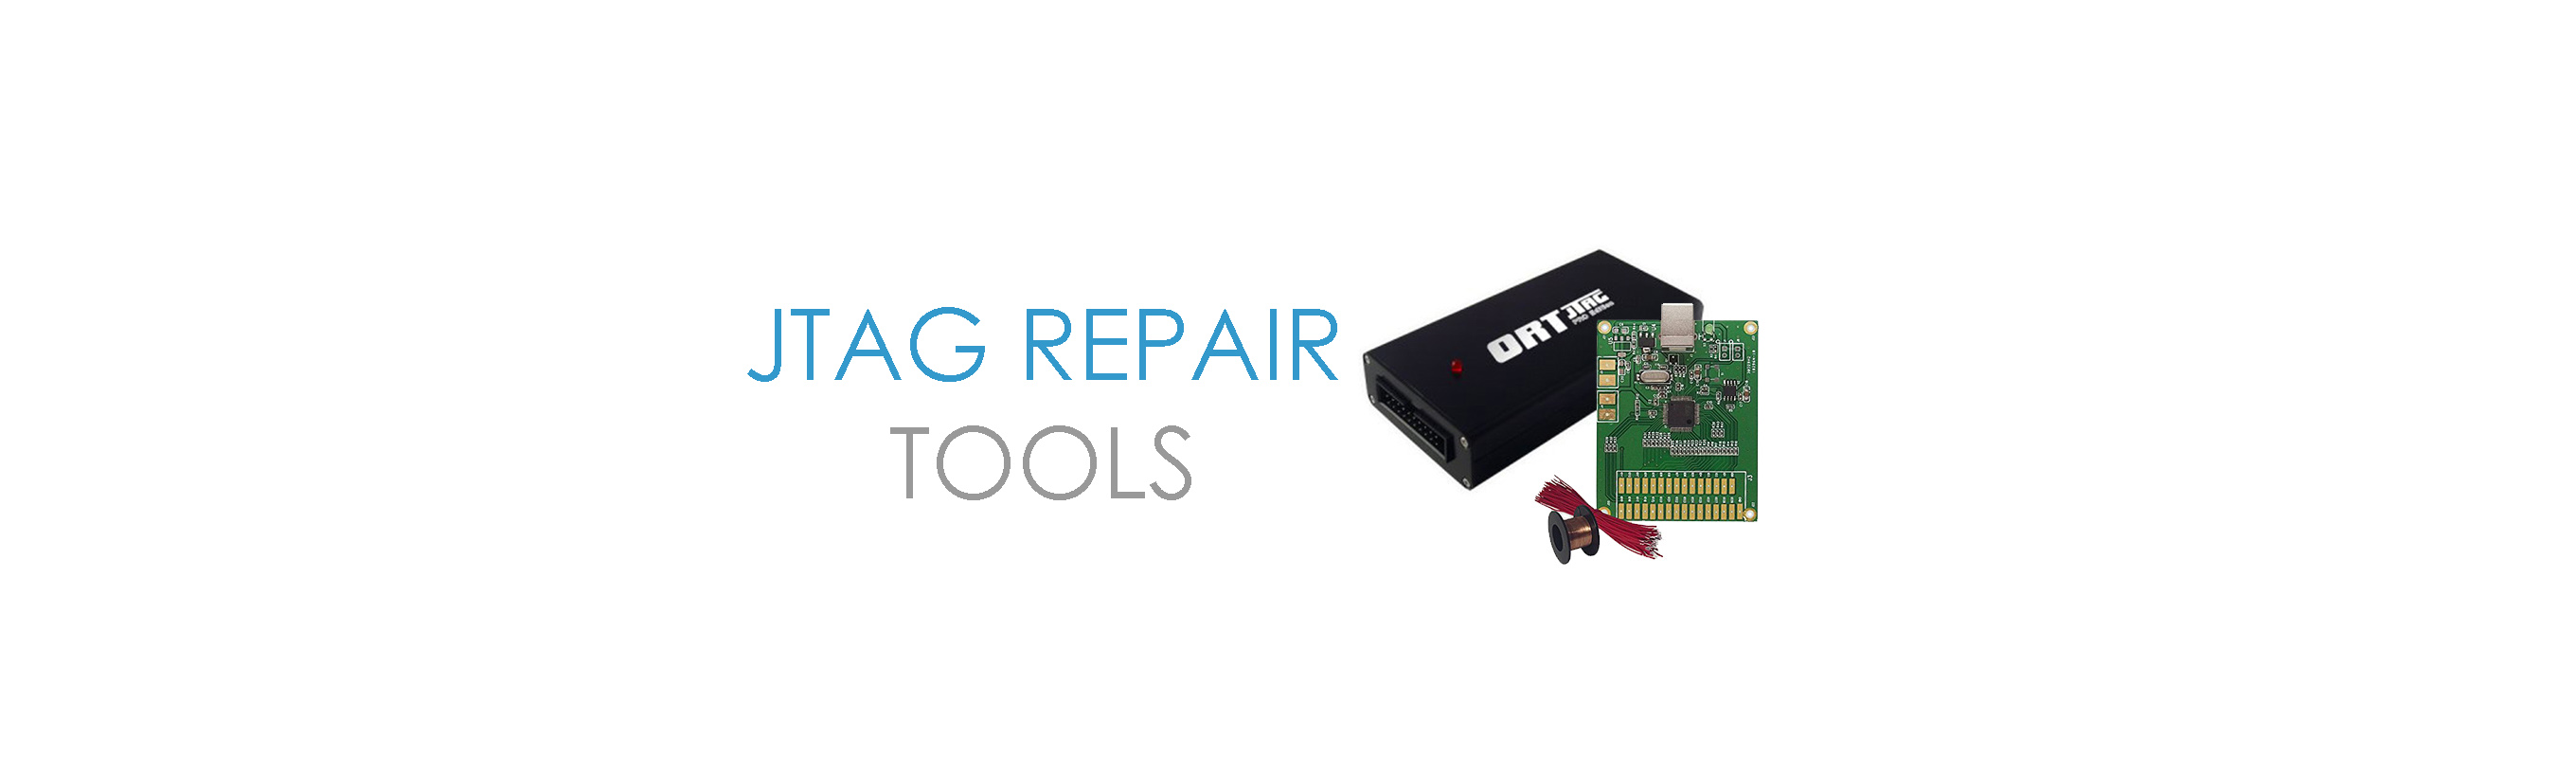 JTAG Repair Tools